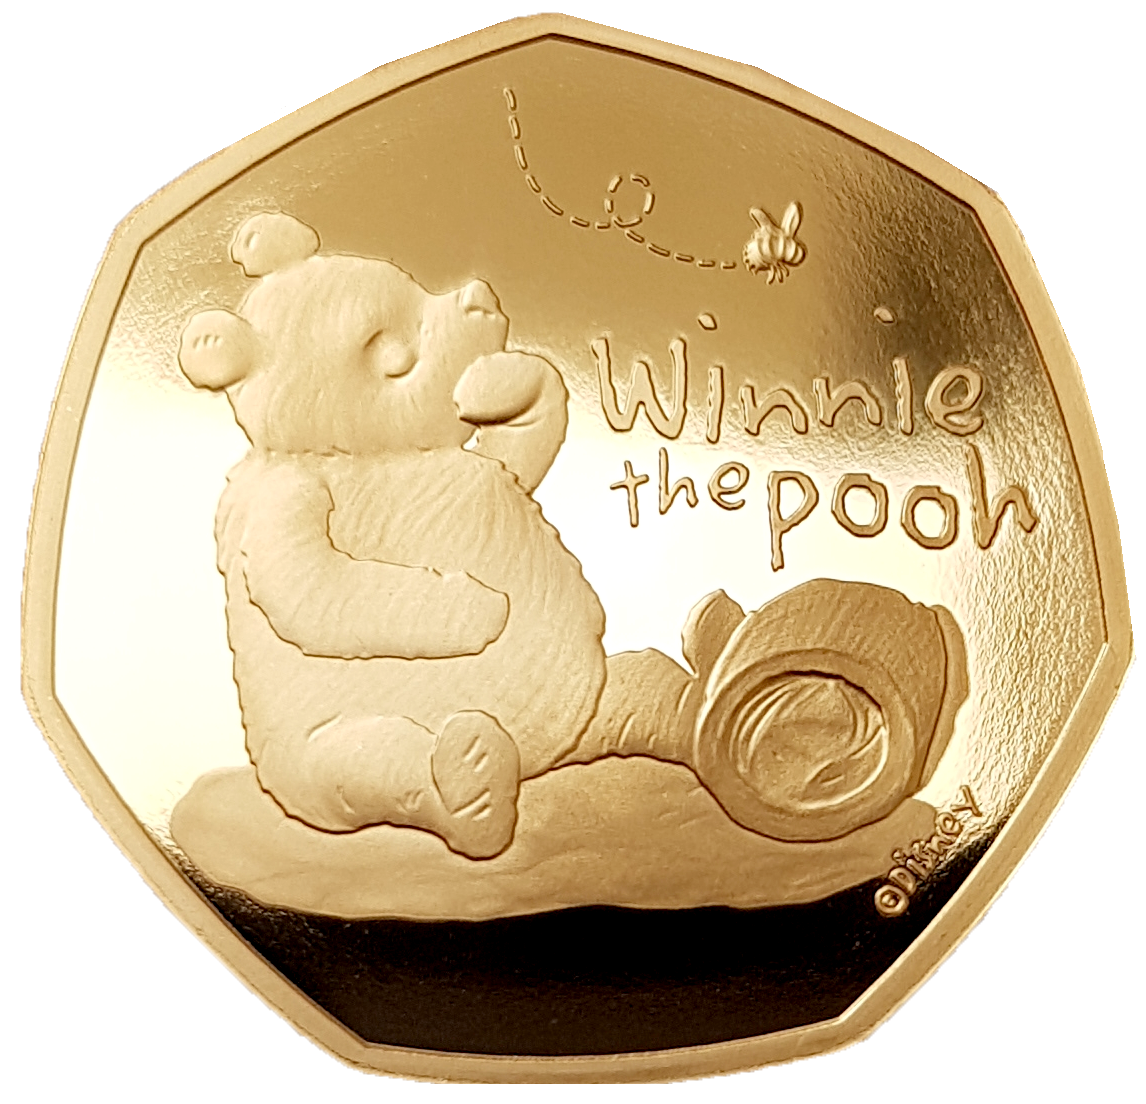 人気SALE2020 Winnie the pooh UK 50p 銀貨 コレクション